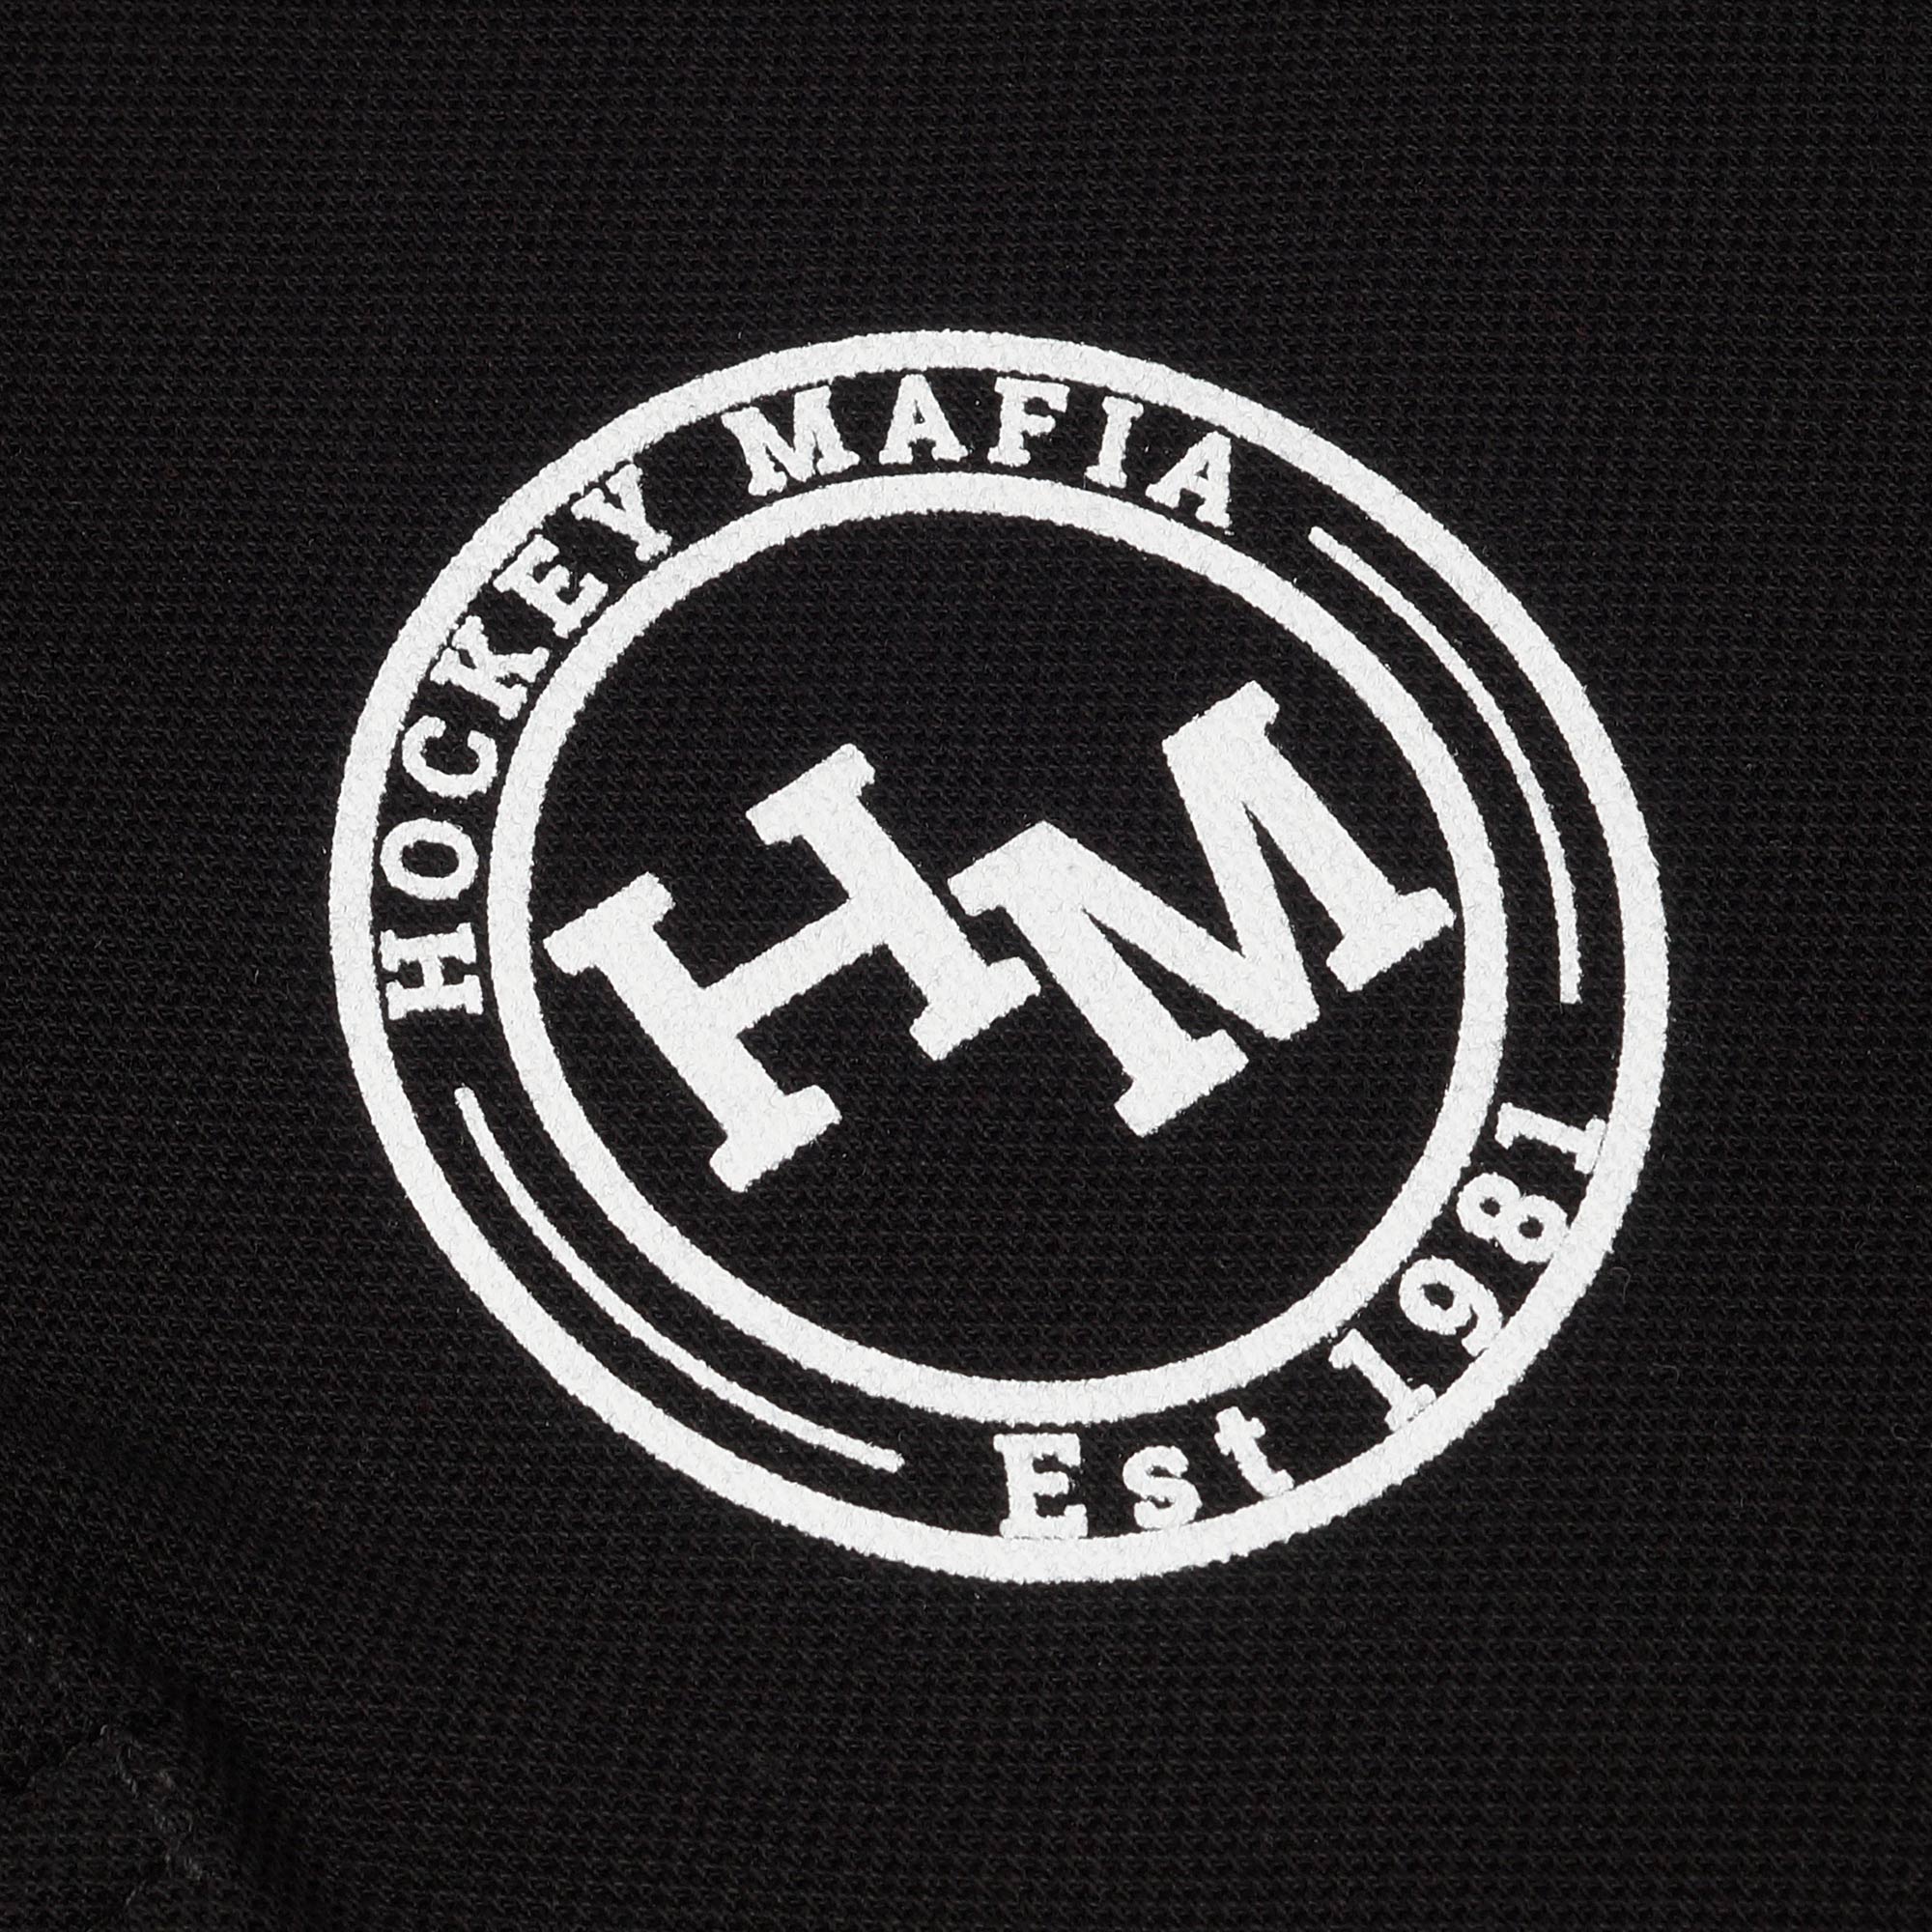 Поло мужское "Hockey Mafia. Est 1981 круг" черное